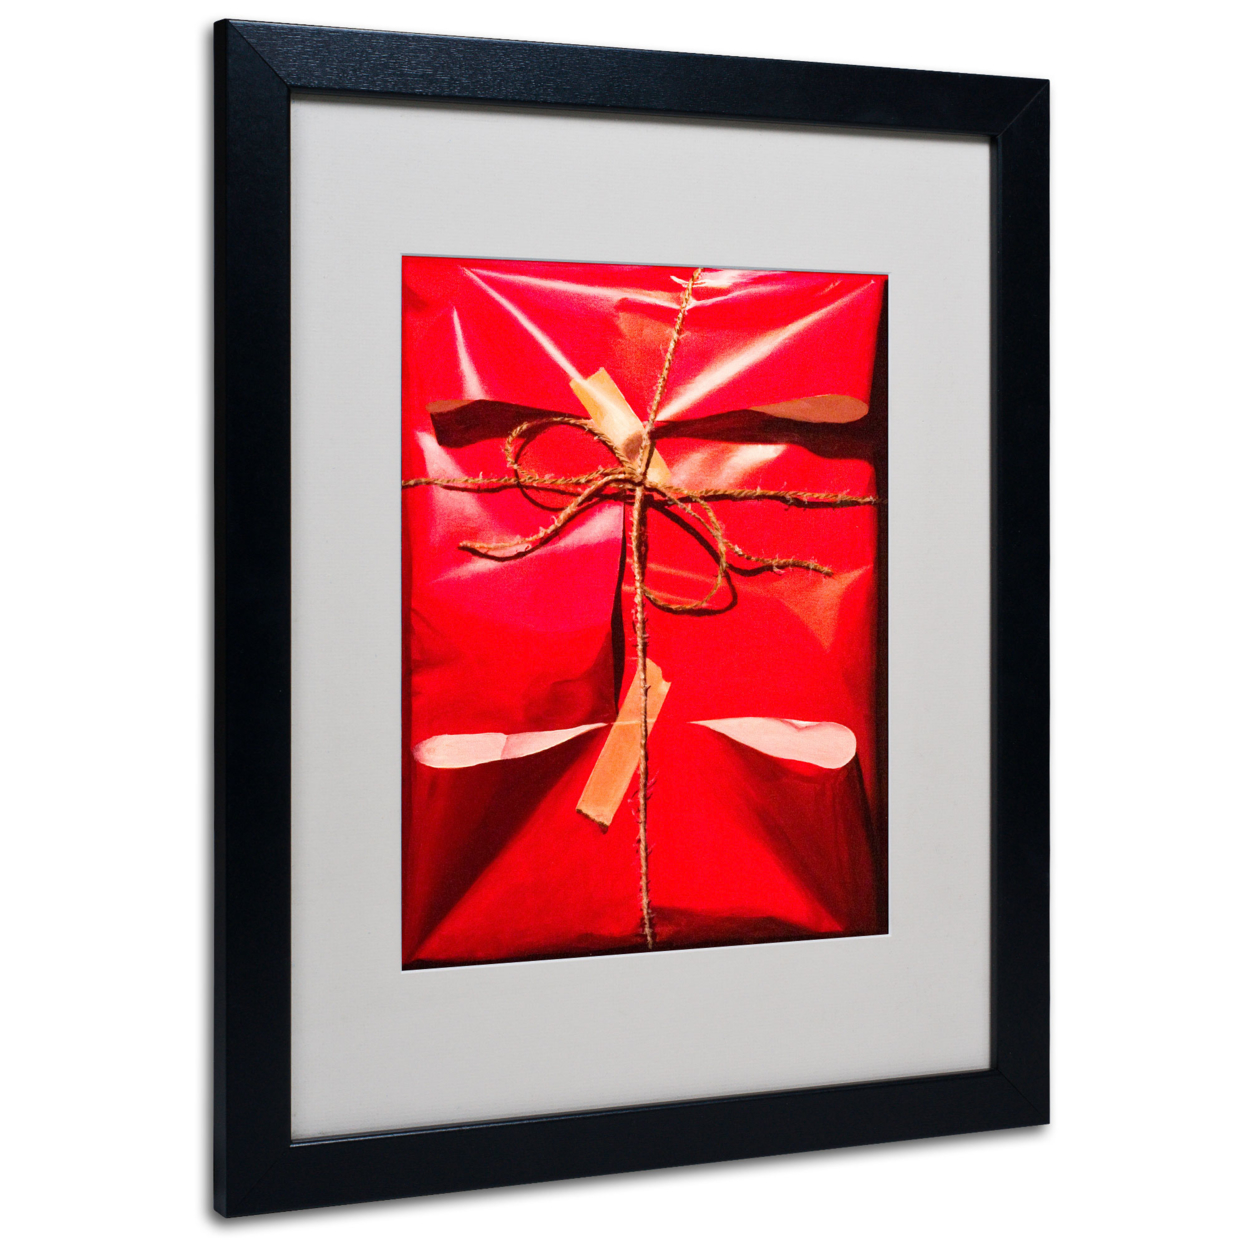 Roderick Stevens 'Red Wrap' Black Wooden Framed Art 18 X 22 Inches